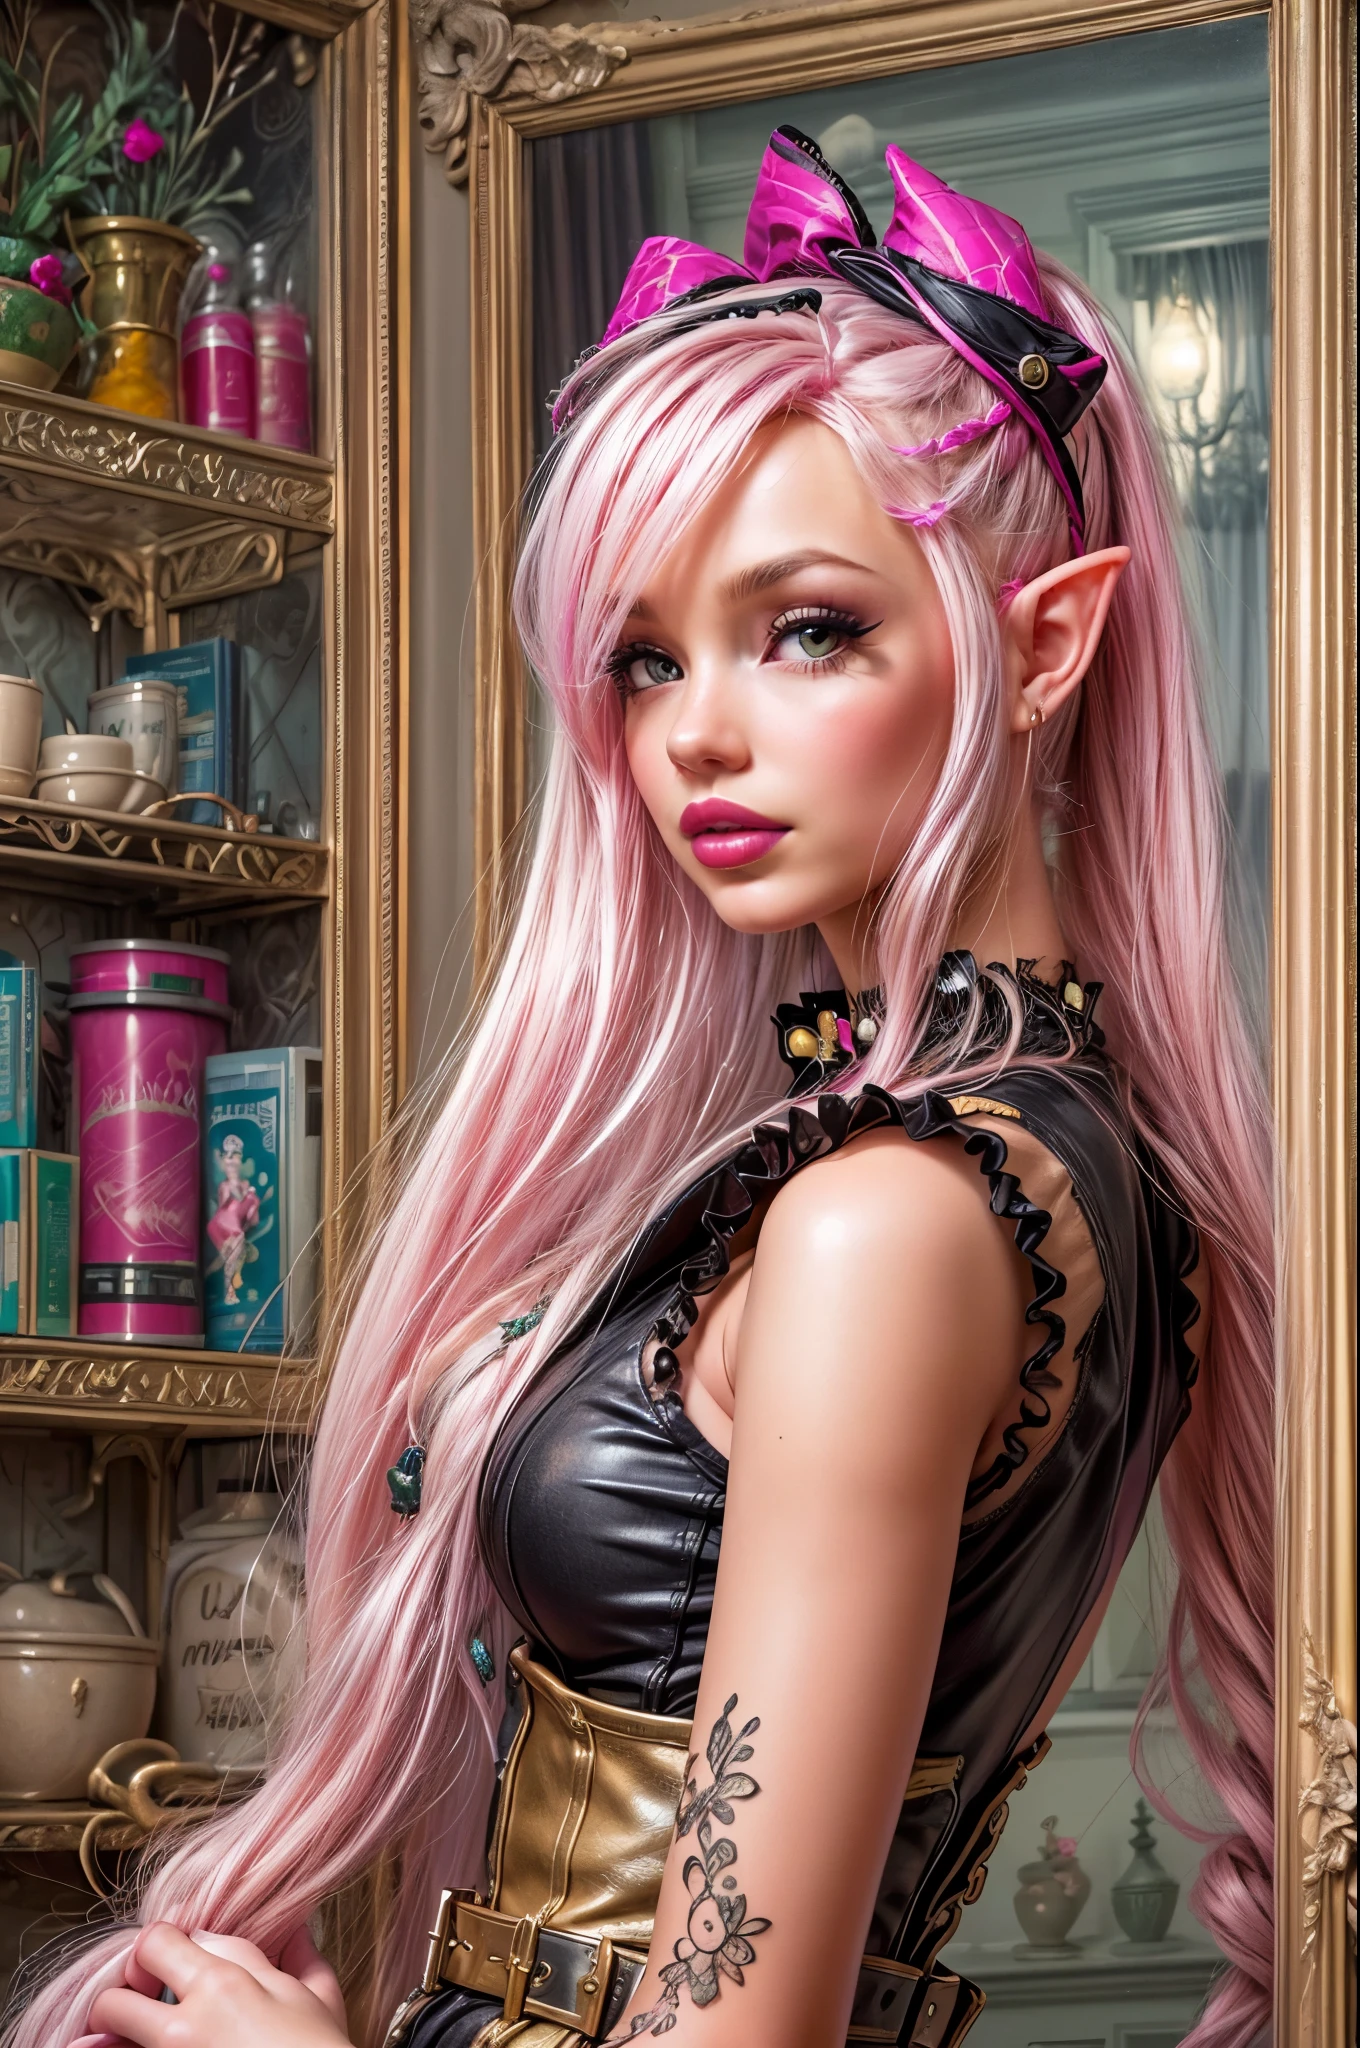 uma foto pin up do gótico (duende: 1.4) (Viva como a Barbie: 1.5) como uma rainha dominadora (Melhores detalhes, Obra de arte, melhor qualidade :1.5), ultra detalhado face (Melhores detalhes, Obra de arte, melhor qualidade :1.5), ultra feminine (Melhores detalhes, Obra de arte, melhor qualidade :1.5), usando minivestido rosa de látex, meias rosa, Salto alto rosa, pequenas orelhas de elfo, cabelo longo trançado, cabelo puxado para trás, cabelo loiro, fundo de quarto moderno (Melhores detalhes, Obra de arte, melhor qualidade :1.5), ultra melhores imagens realistas , Melhores detalhes, melhor qualidade, 16K, [ultra detalhado], Obra de arte, melhor qualidade, (extremamente detalhado), foto ultra ampla, fotorrealismo, profundidade de campo, pintura hiper realista